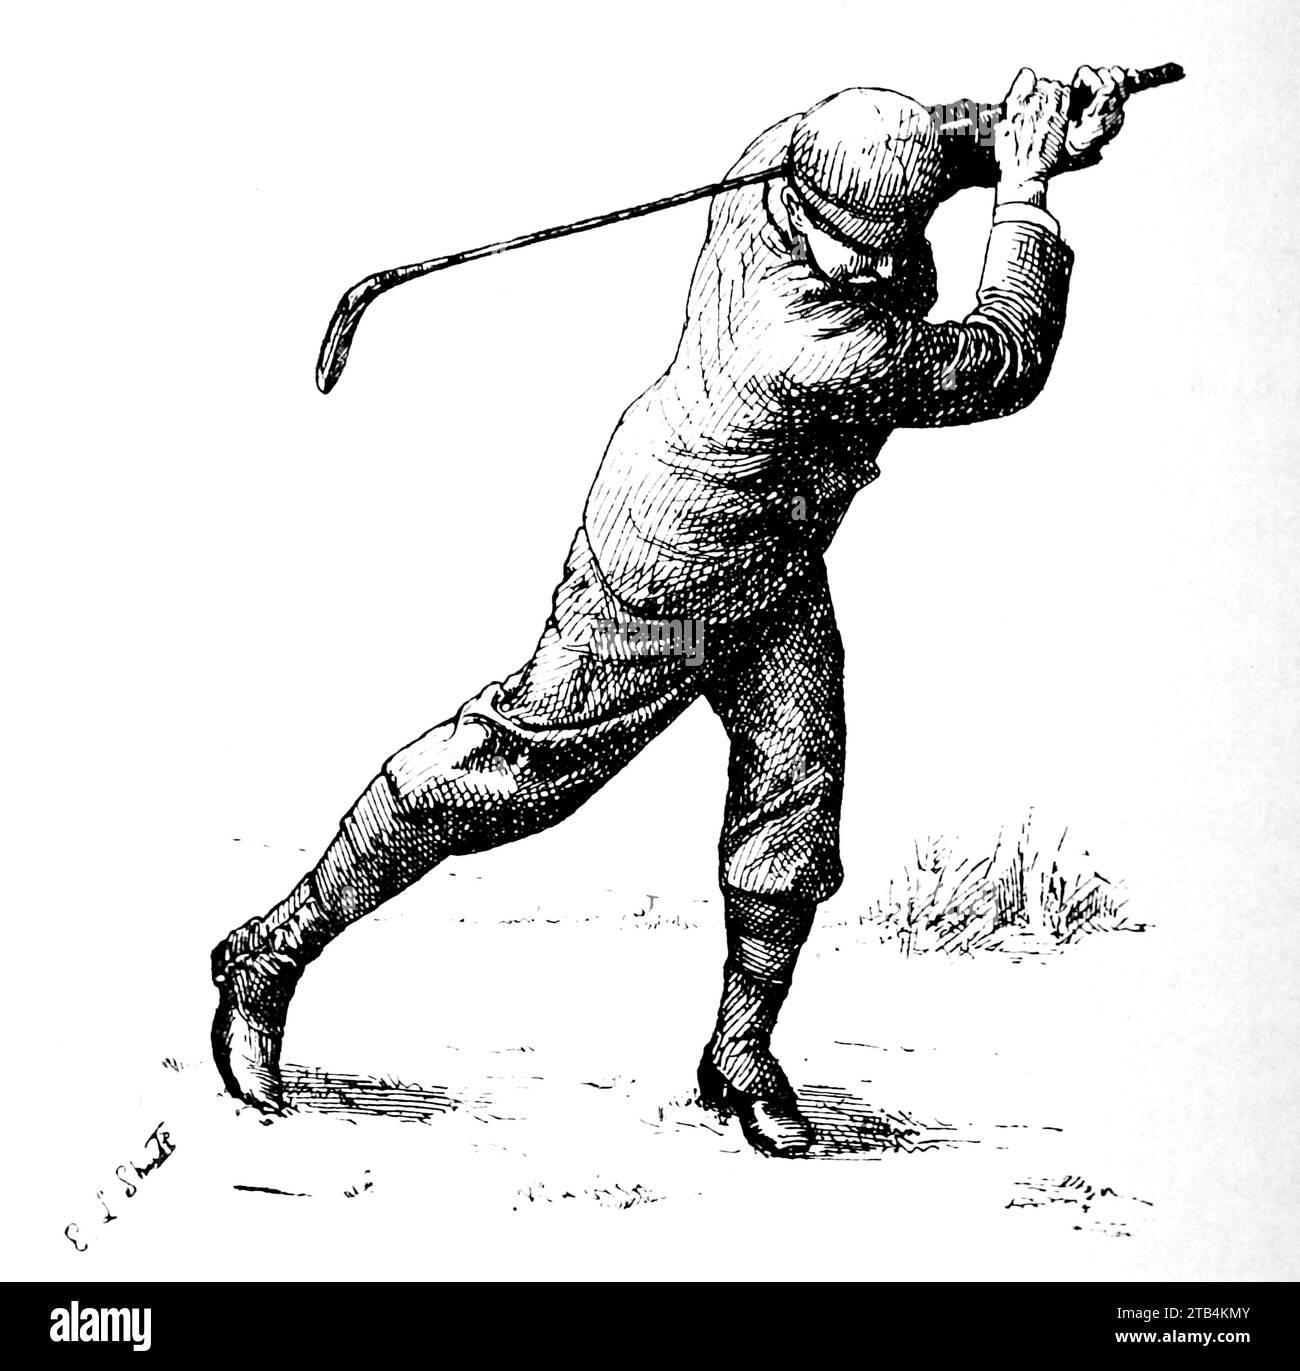 Alla fine dell'oscillazione, (come dovrebbe essere), da E.L. Shute. Da un'illustrazione sul golf, datata dal 1889 al 1901. La storia del golf è lunga. Anche se le sue origini sono contestate, gli storici sono generalmente concordi sul fatto che quello che è conosciuto come "moderno" golf è iniziato nel Medioevo in Scozia. Fu solo dalla metà alla fine del XIX secolo che questo sport divenne più popolare in Gran Bretagna, nell'Impero britannico e poi negli Stati Uniti. Nel corso degli anni, l'umile palla da golf e il golf club sono cambiati enormemente. Foto Stock